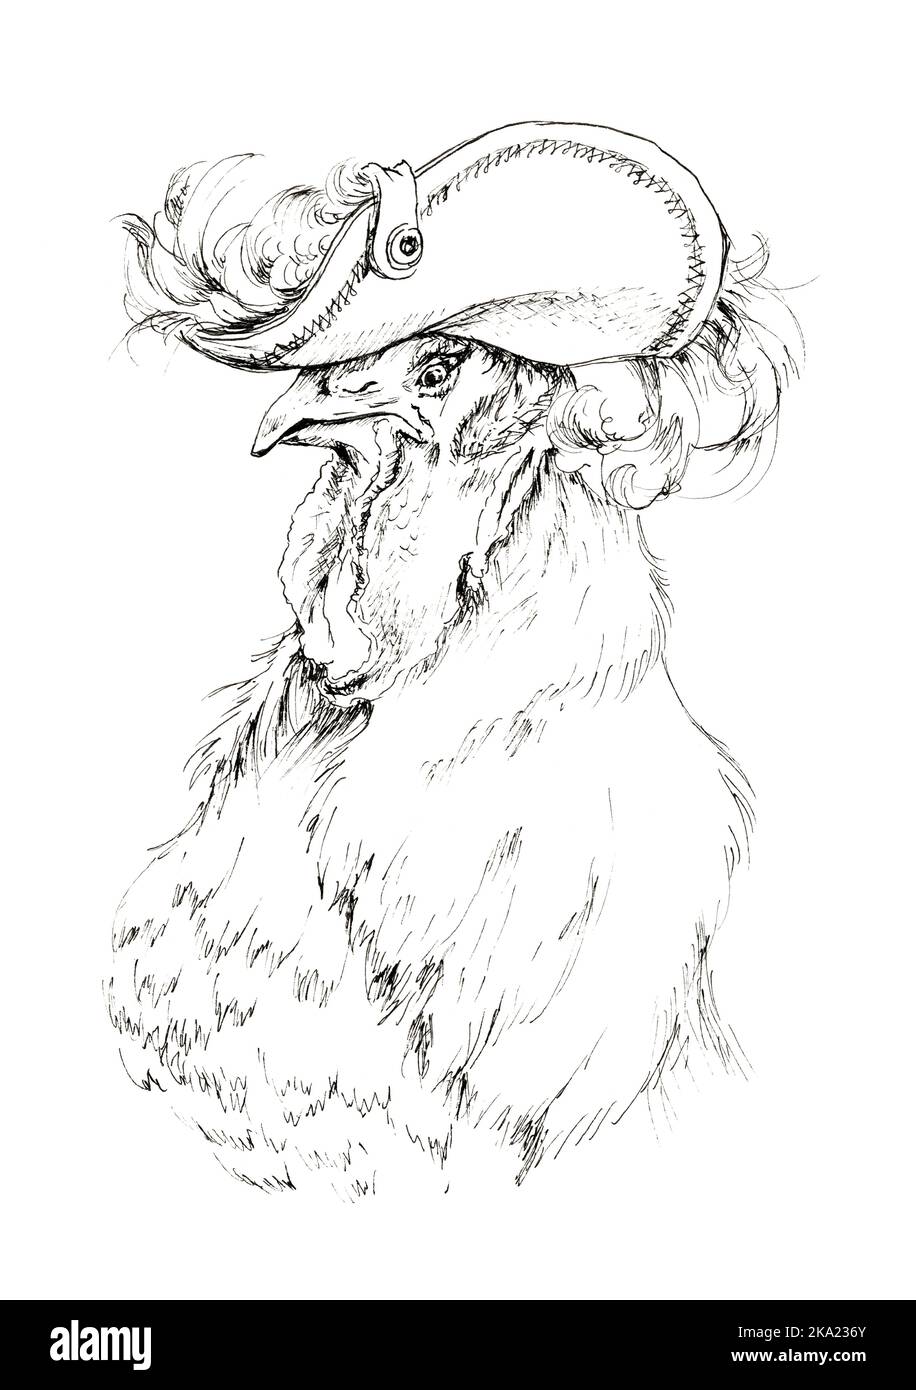 Gallo generale. Disegno comico di un gallo pomposo che indossa un cappello con una piuma. Illustrazione con inchiostro disegnato a mano. Foto Stock